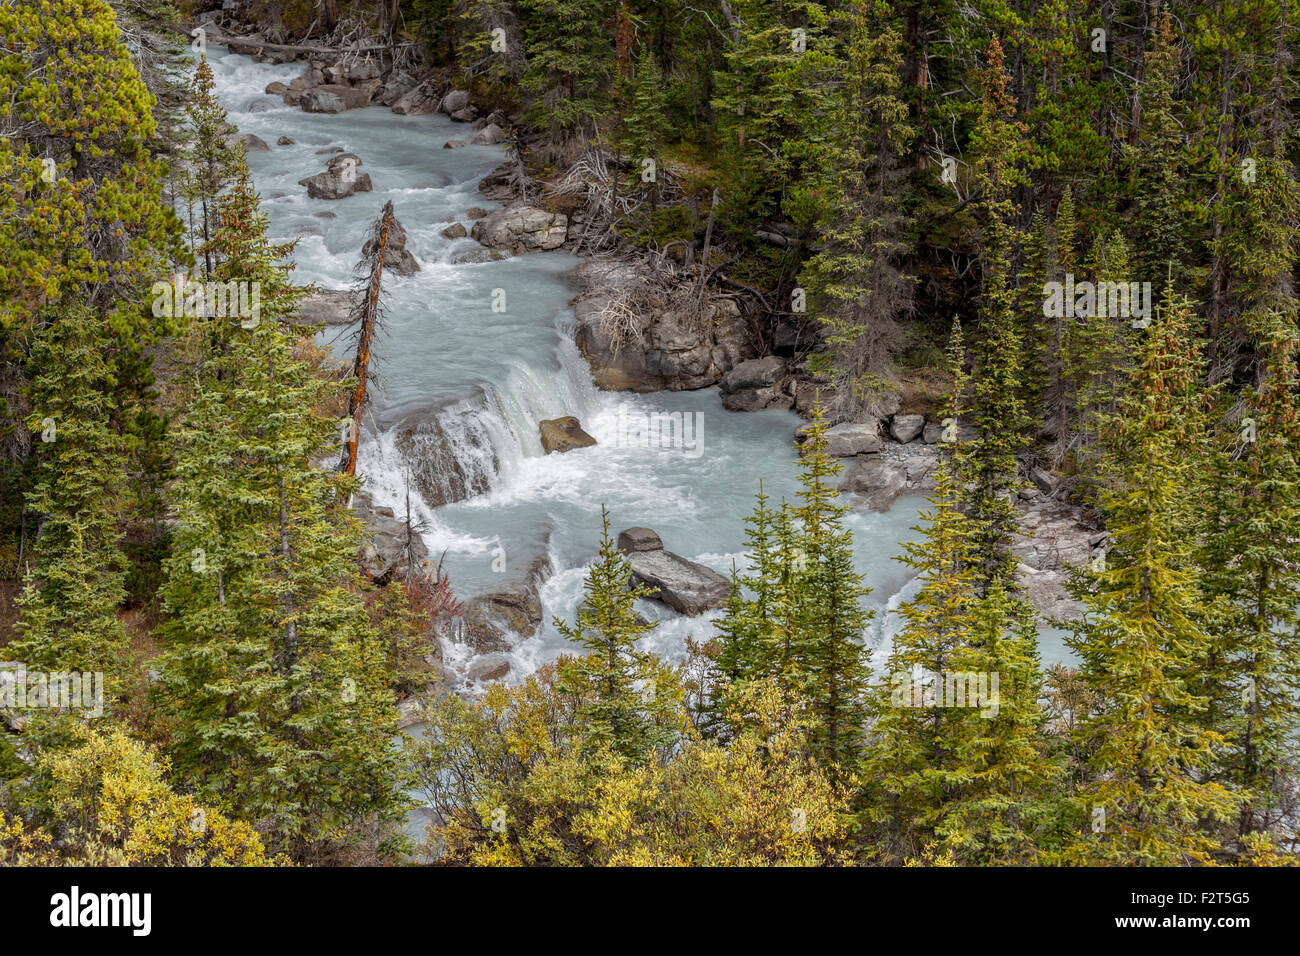 High angle view sur Nigel Creek dans le parc national de Banff, dans les Rocheuses canadiennes, Alberta, Canada, Amérique du Nord. Banque D'Images